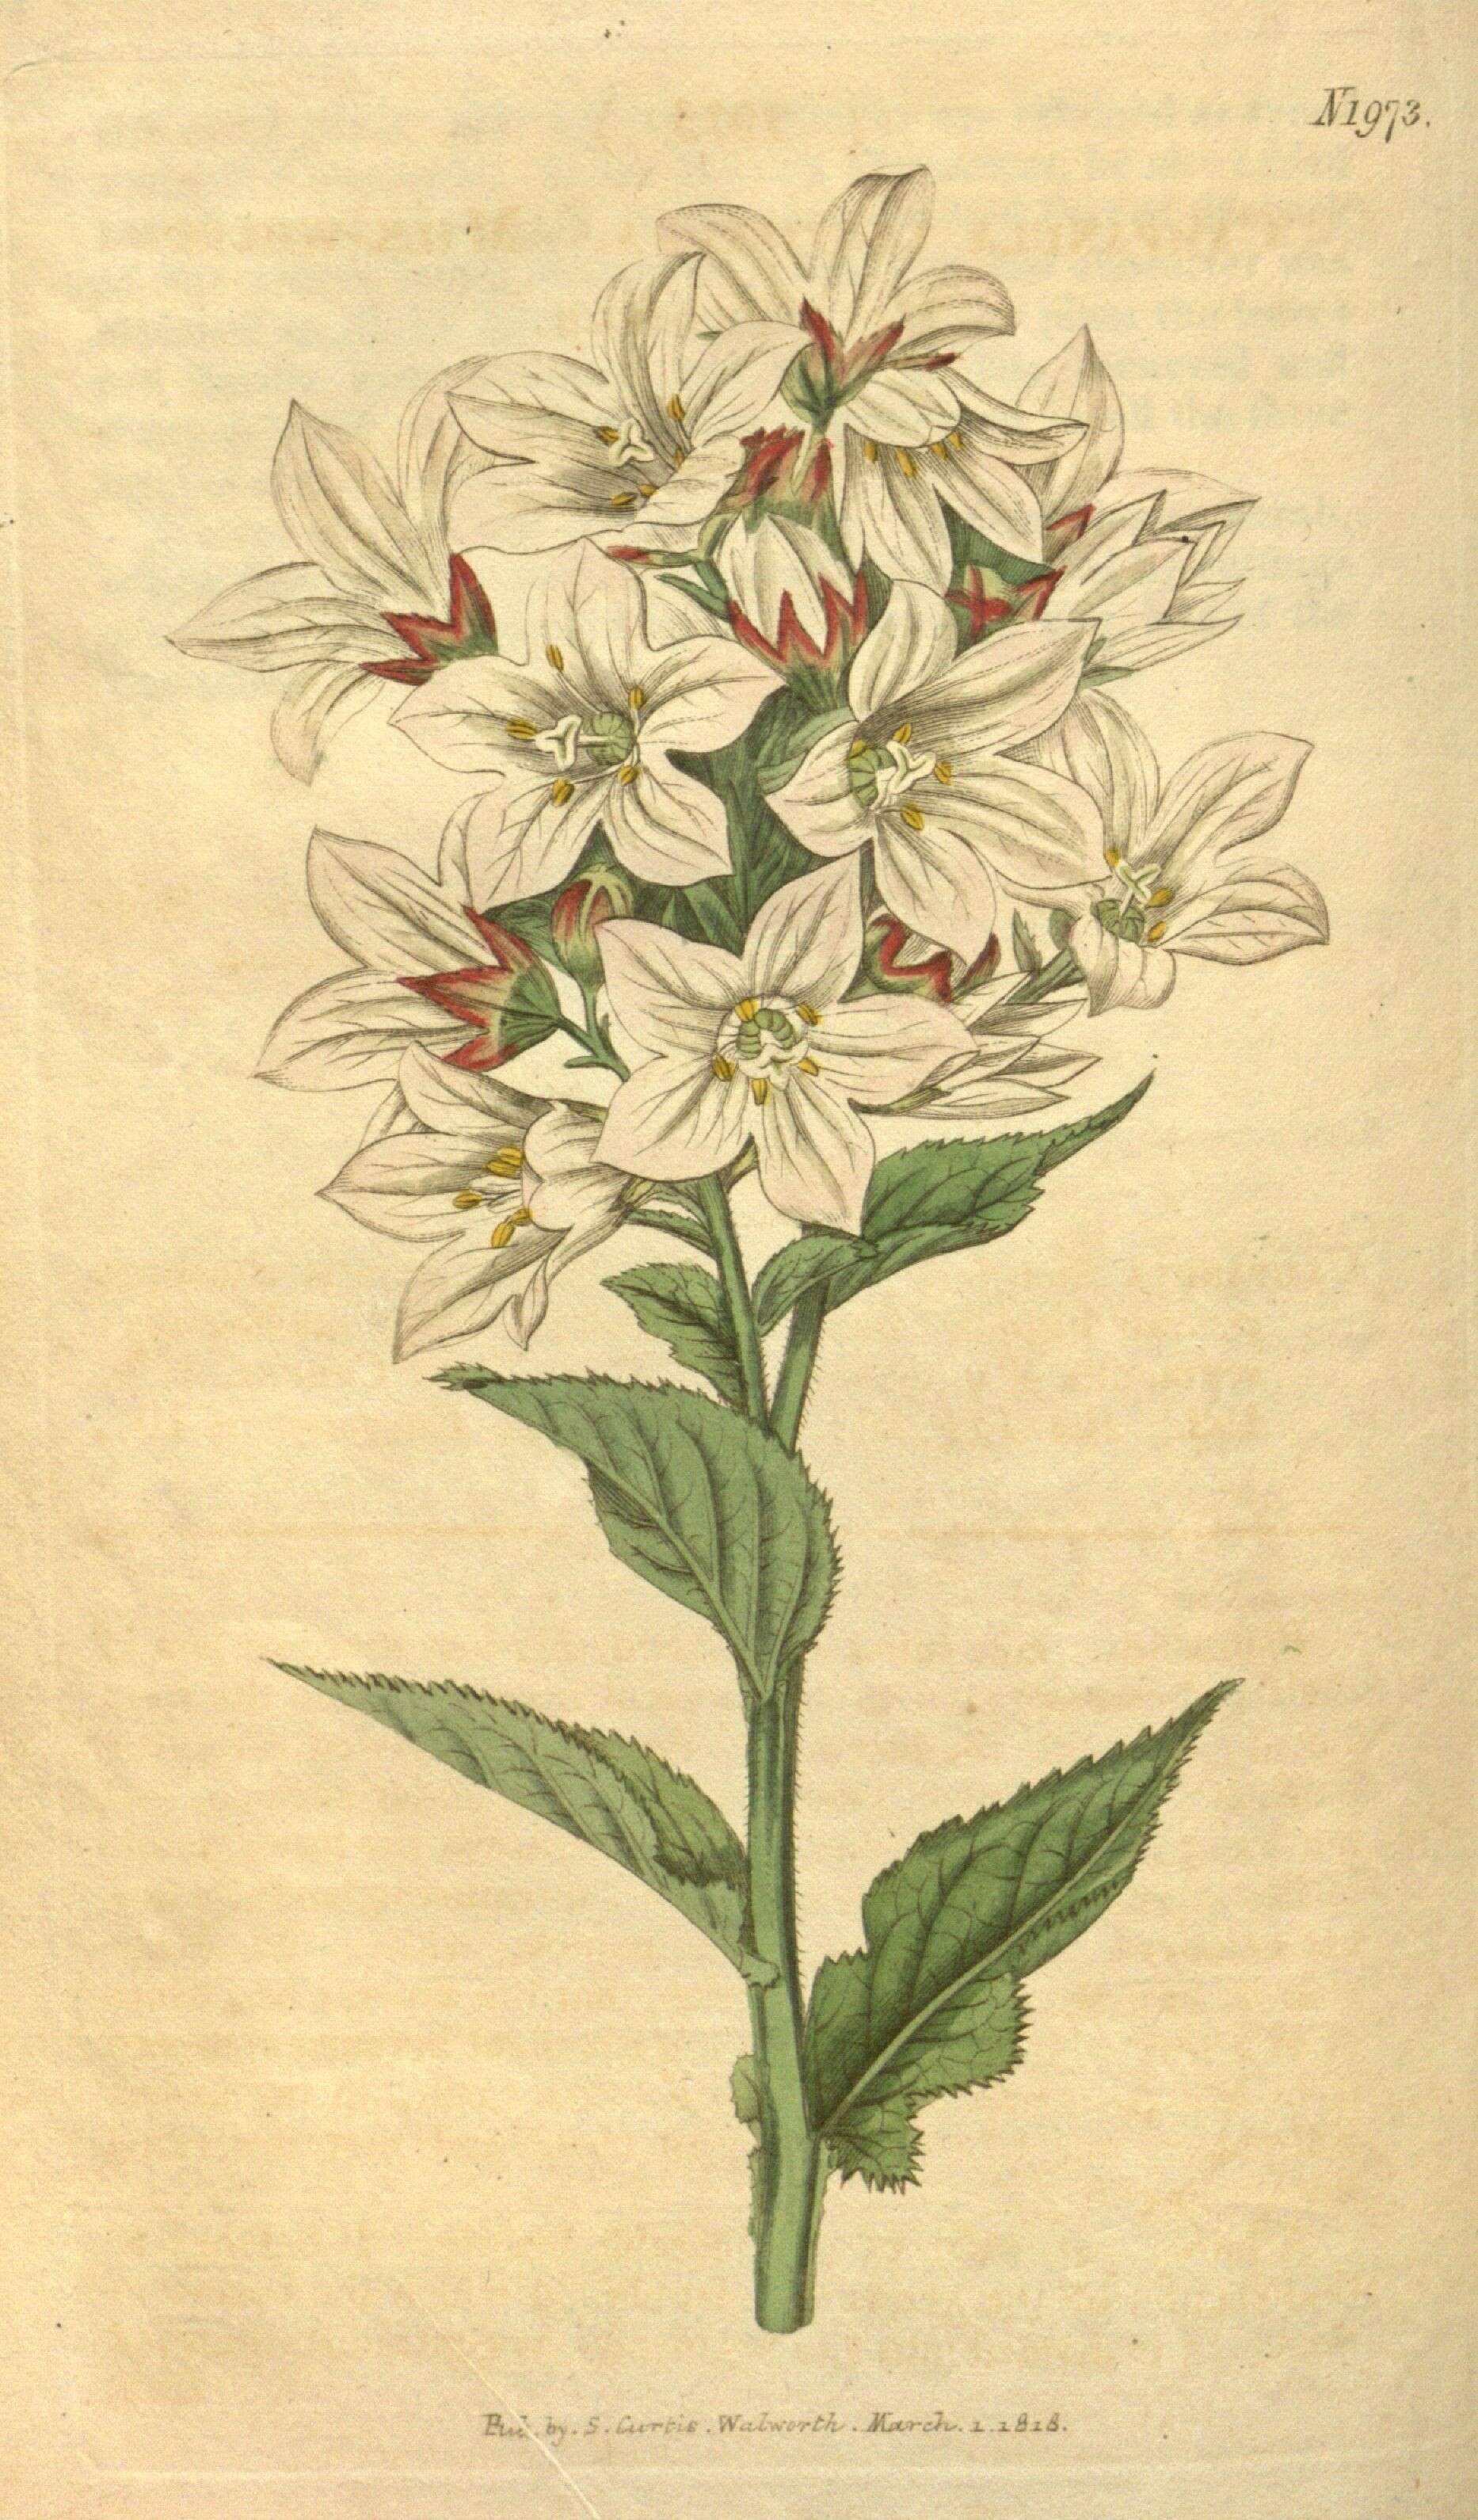 Image of milky bellflower